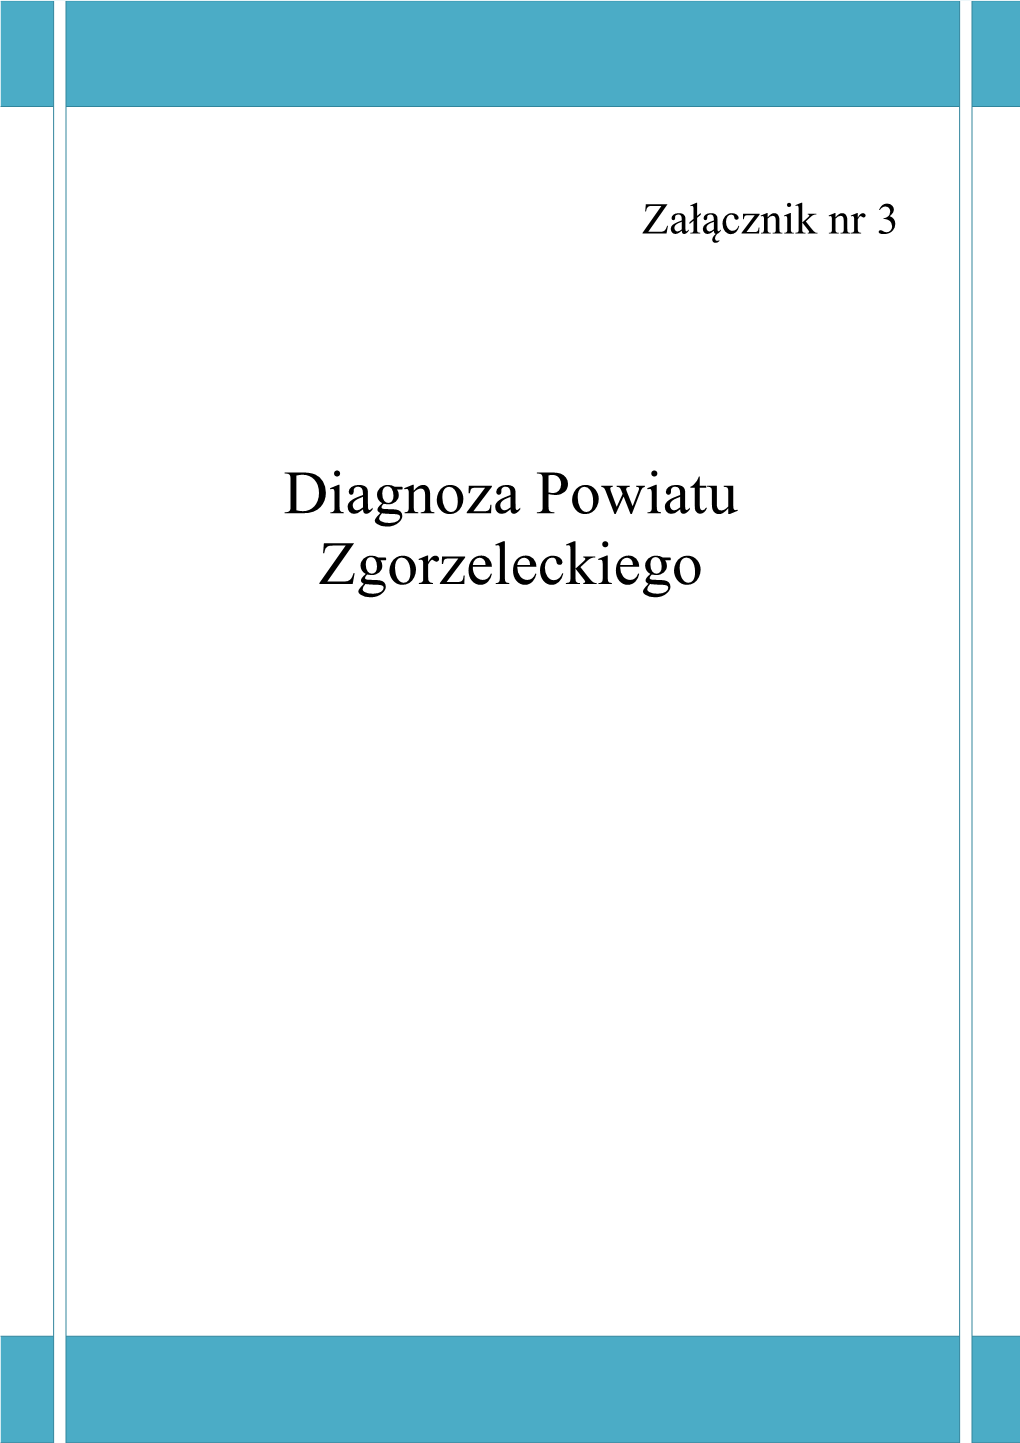 Diagnoza Powiatu Zgorzeleckiego